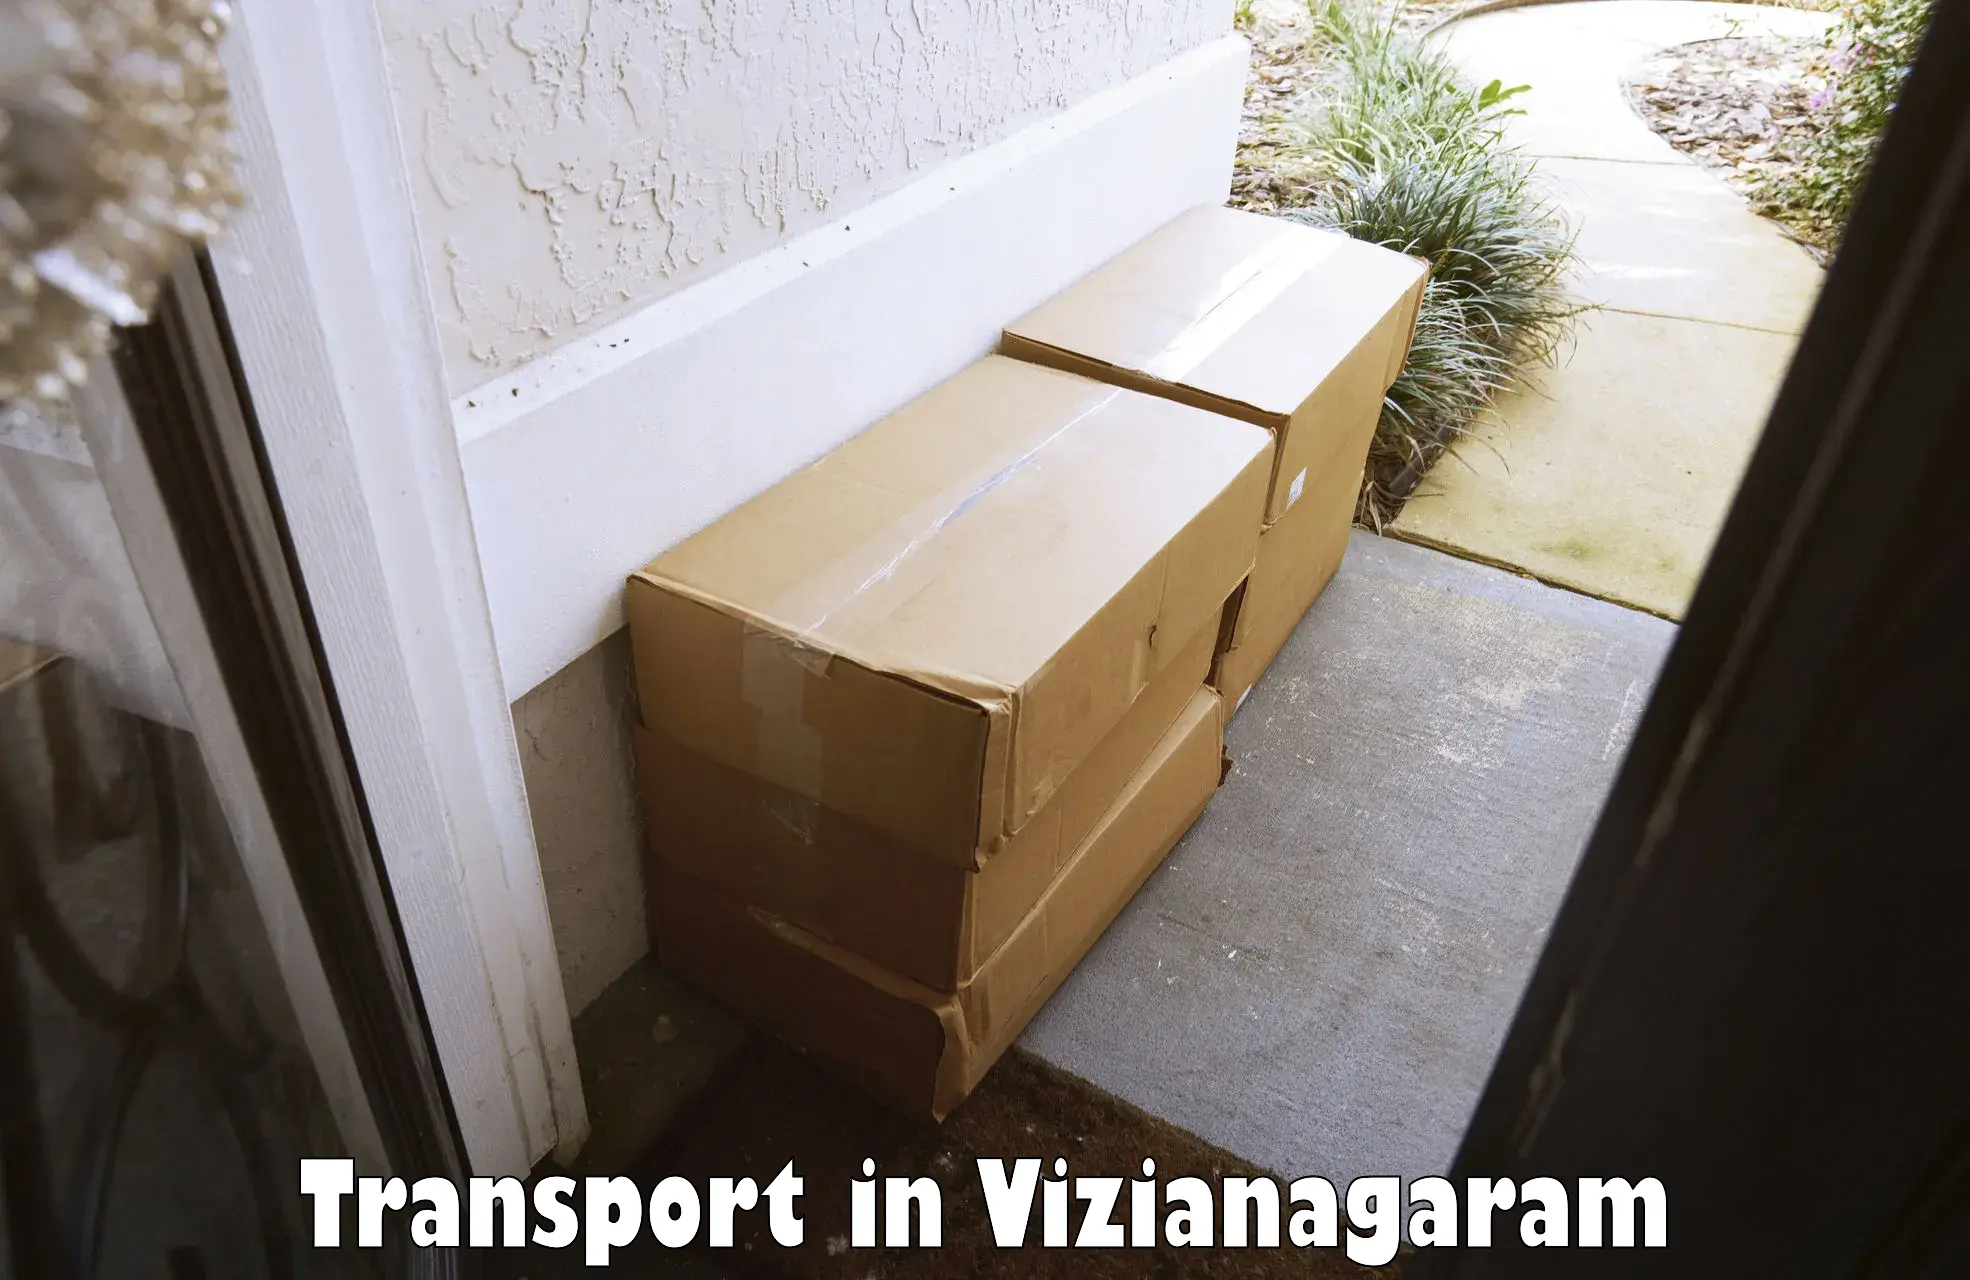 India truck logistics services in Vizianagaram